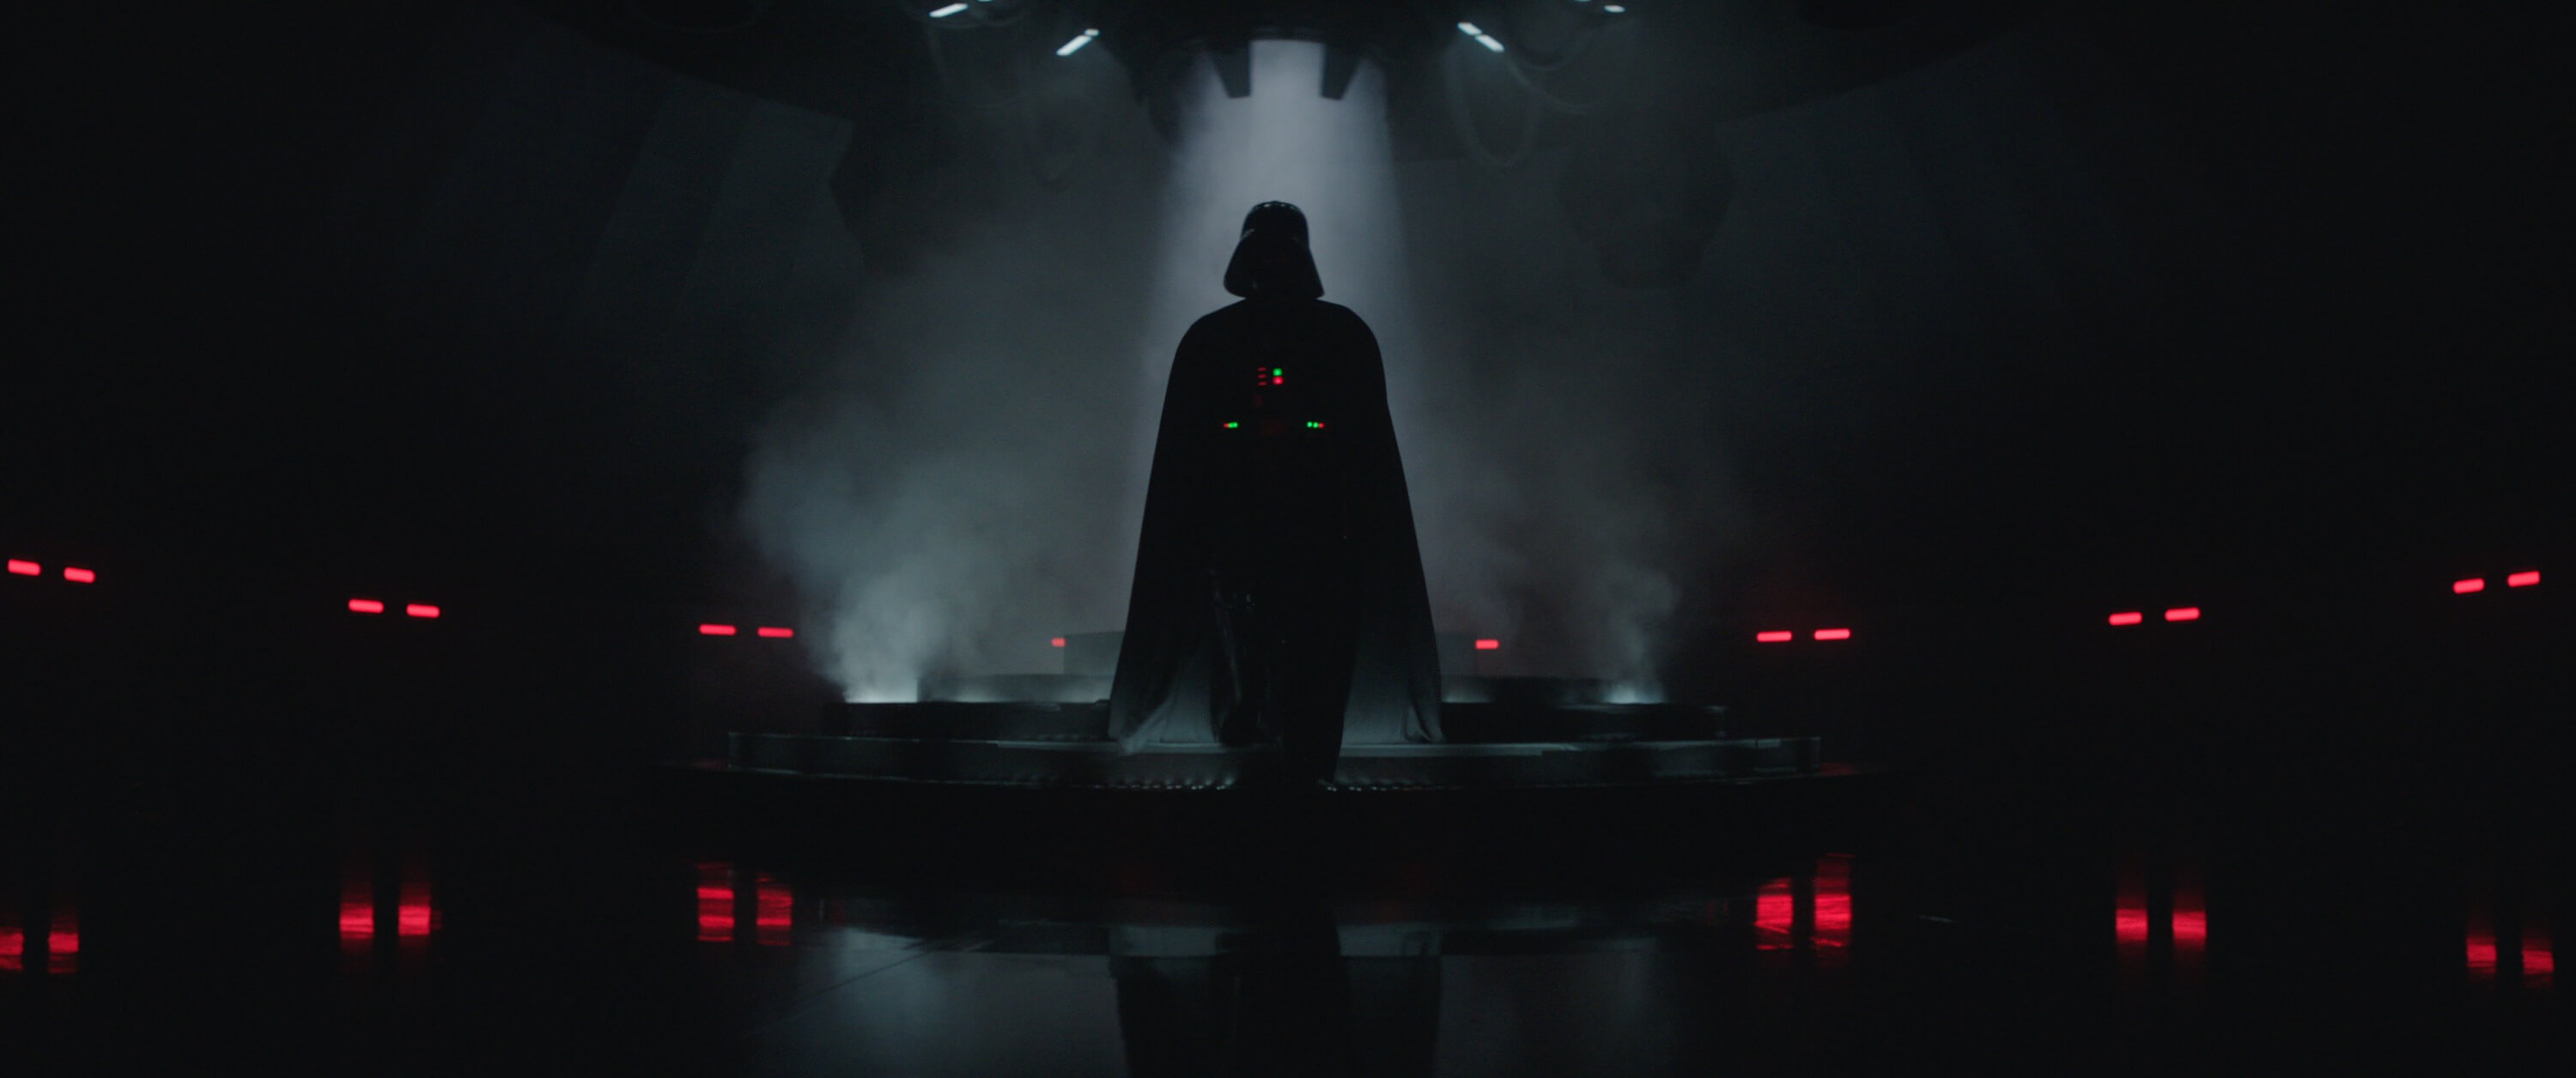 Deborah Chow discusses bringing Hayden Christensen back as Darth Vader in Obi-Wan Kenobi series